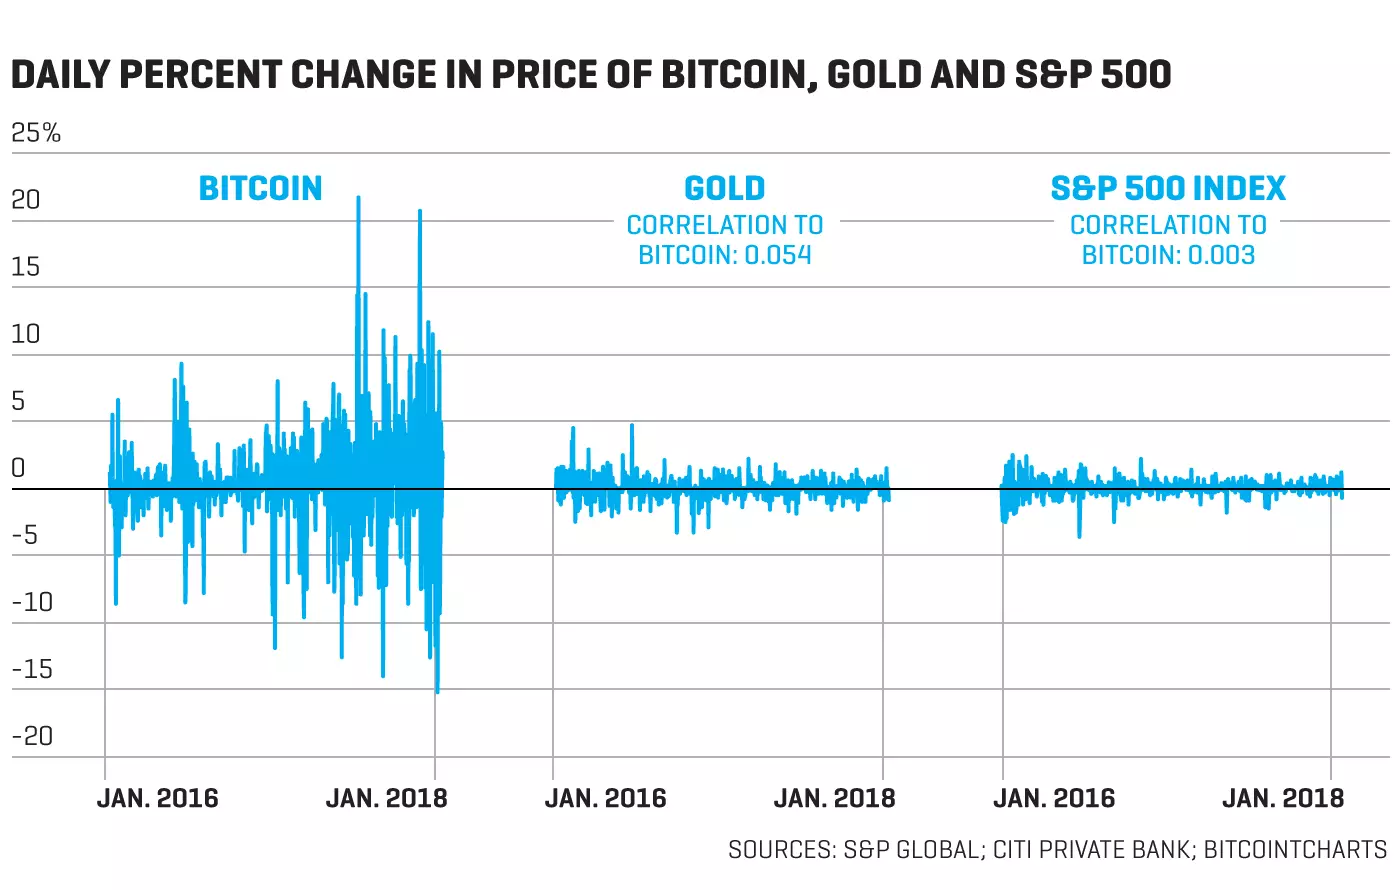 Sopglobal 2695 что это. Индекс волатильности биткоина. Gold корреляция. Волатильный vs неволатильный рынок.. Bitcoin vs Gold correlation.